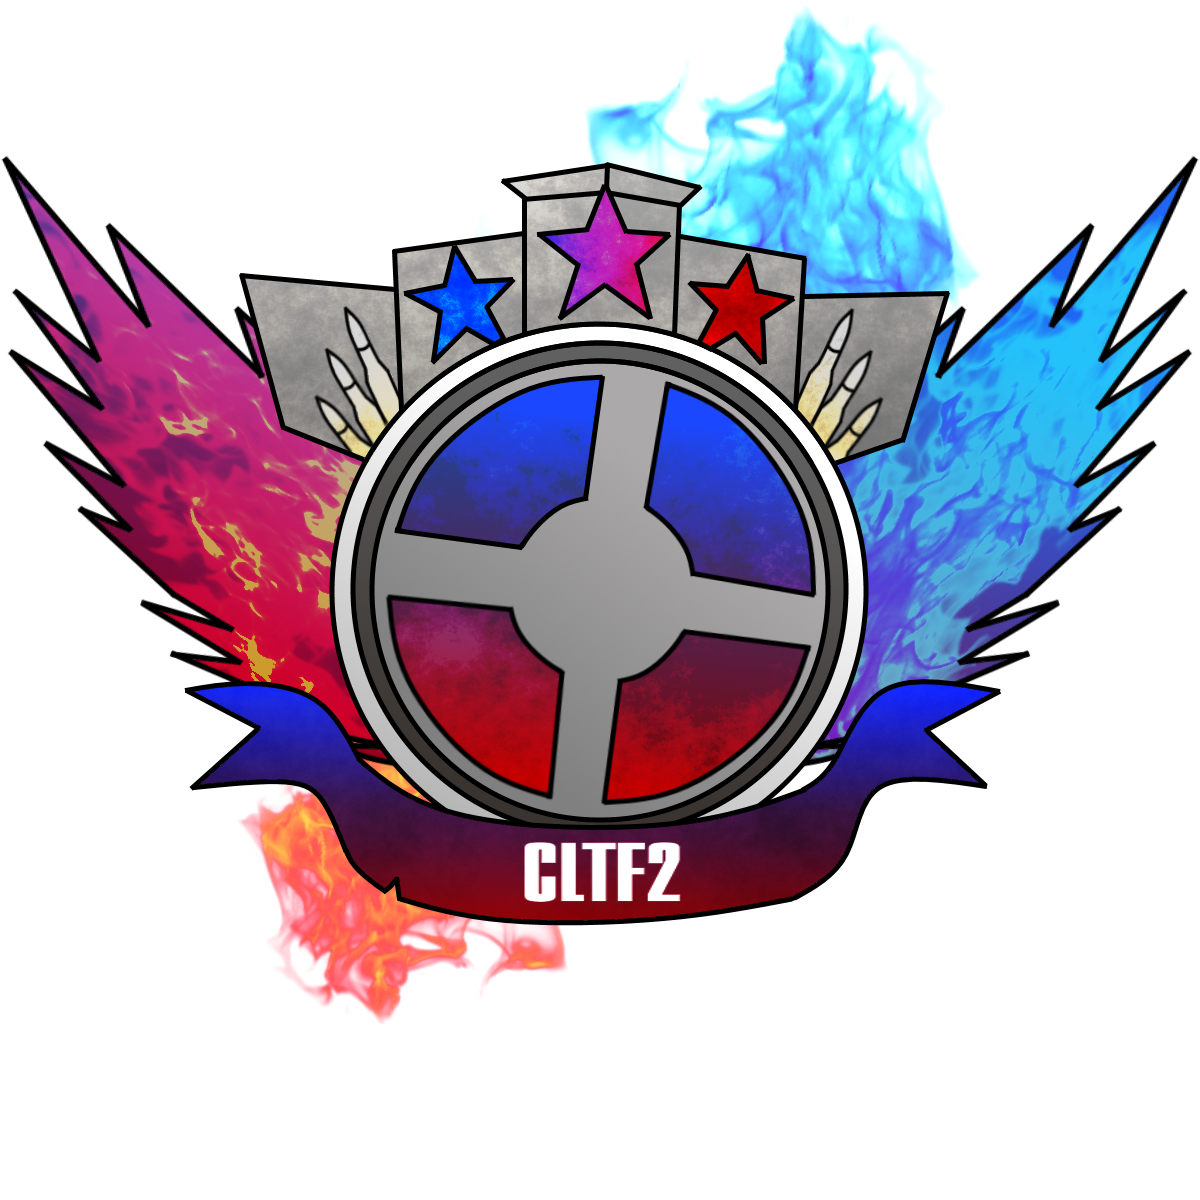 cltf2 logo